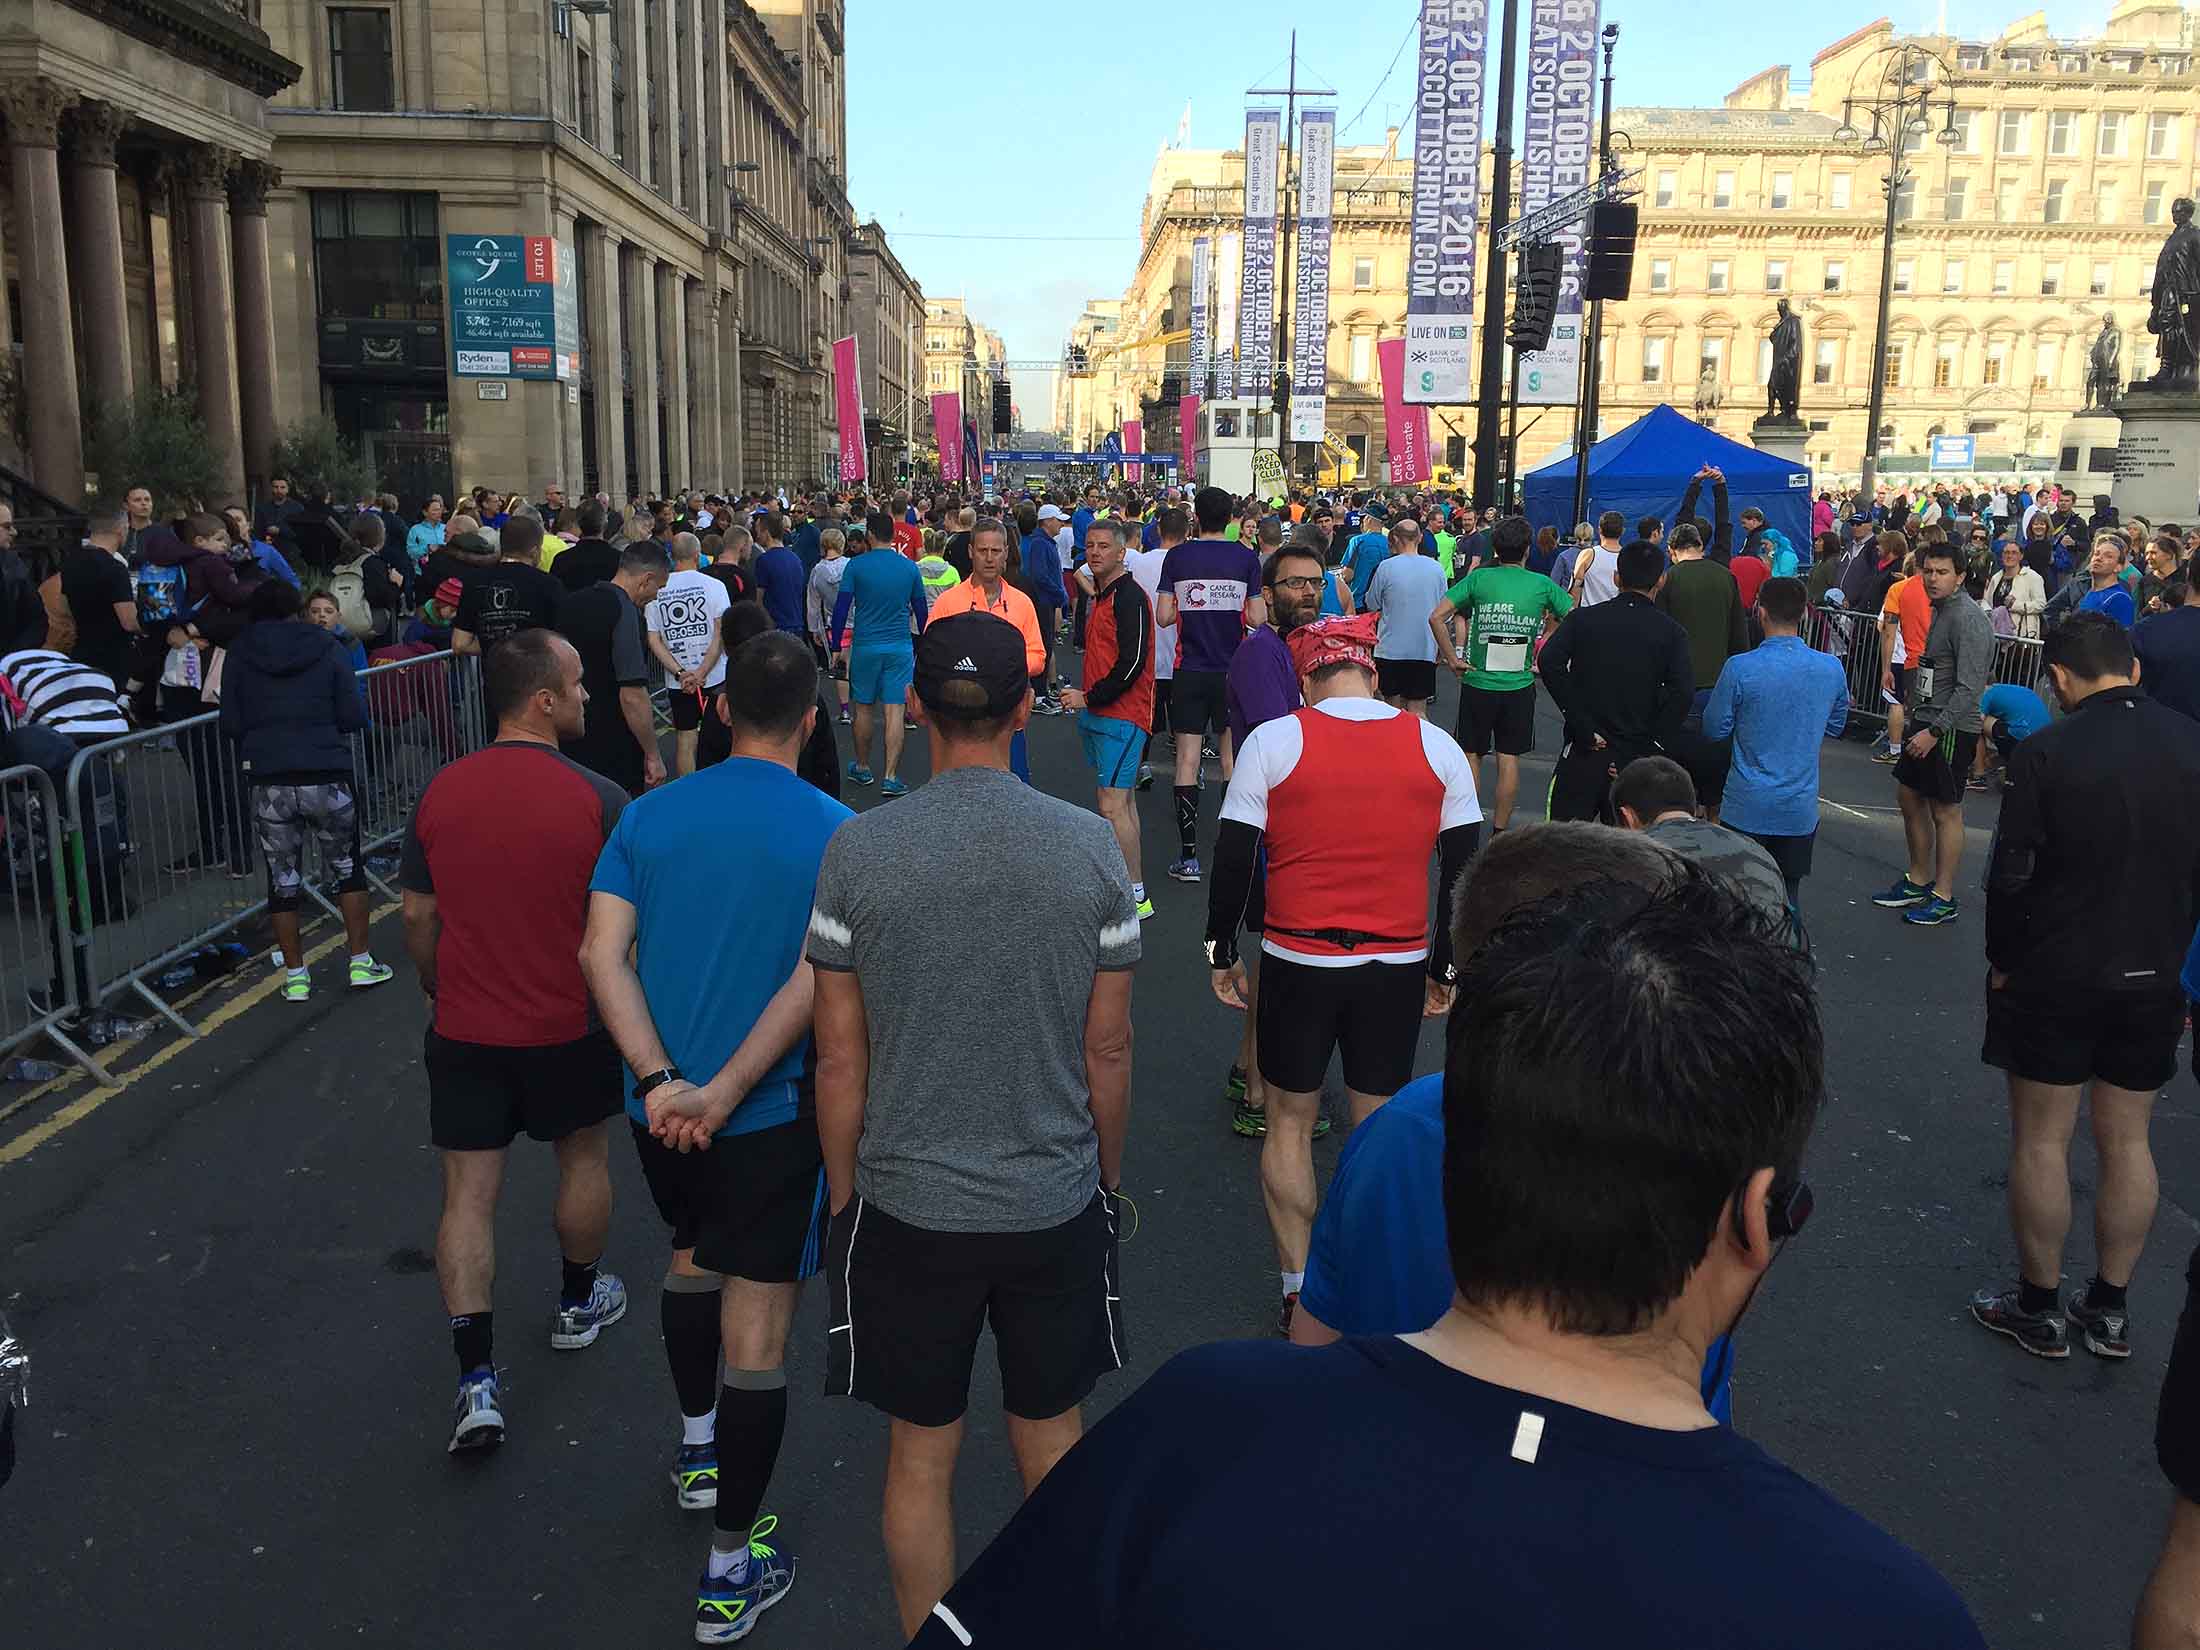 Glasgow half marathon route information